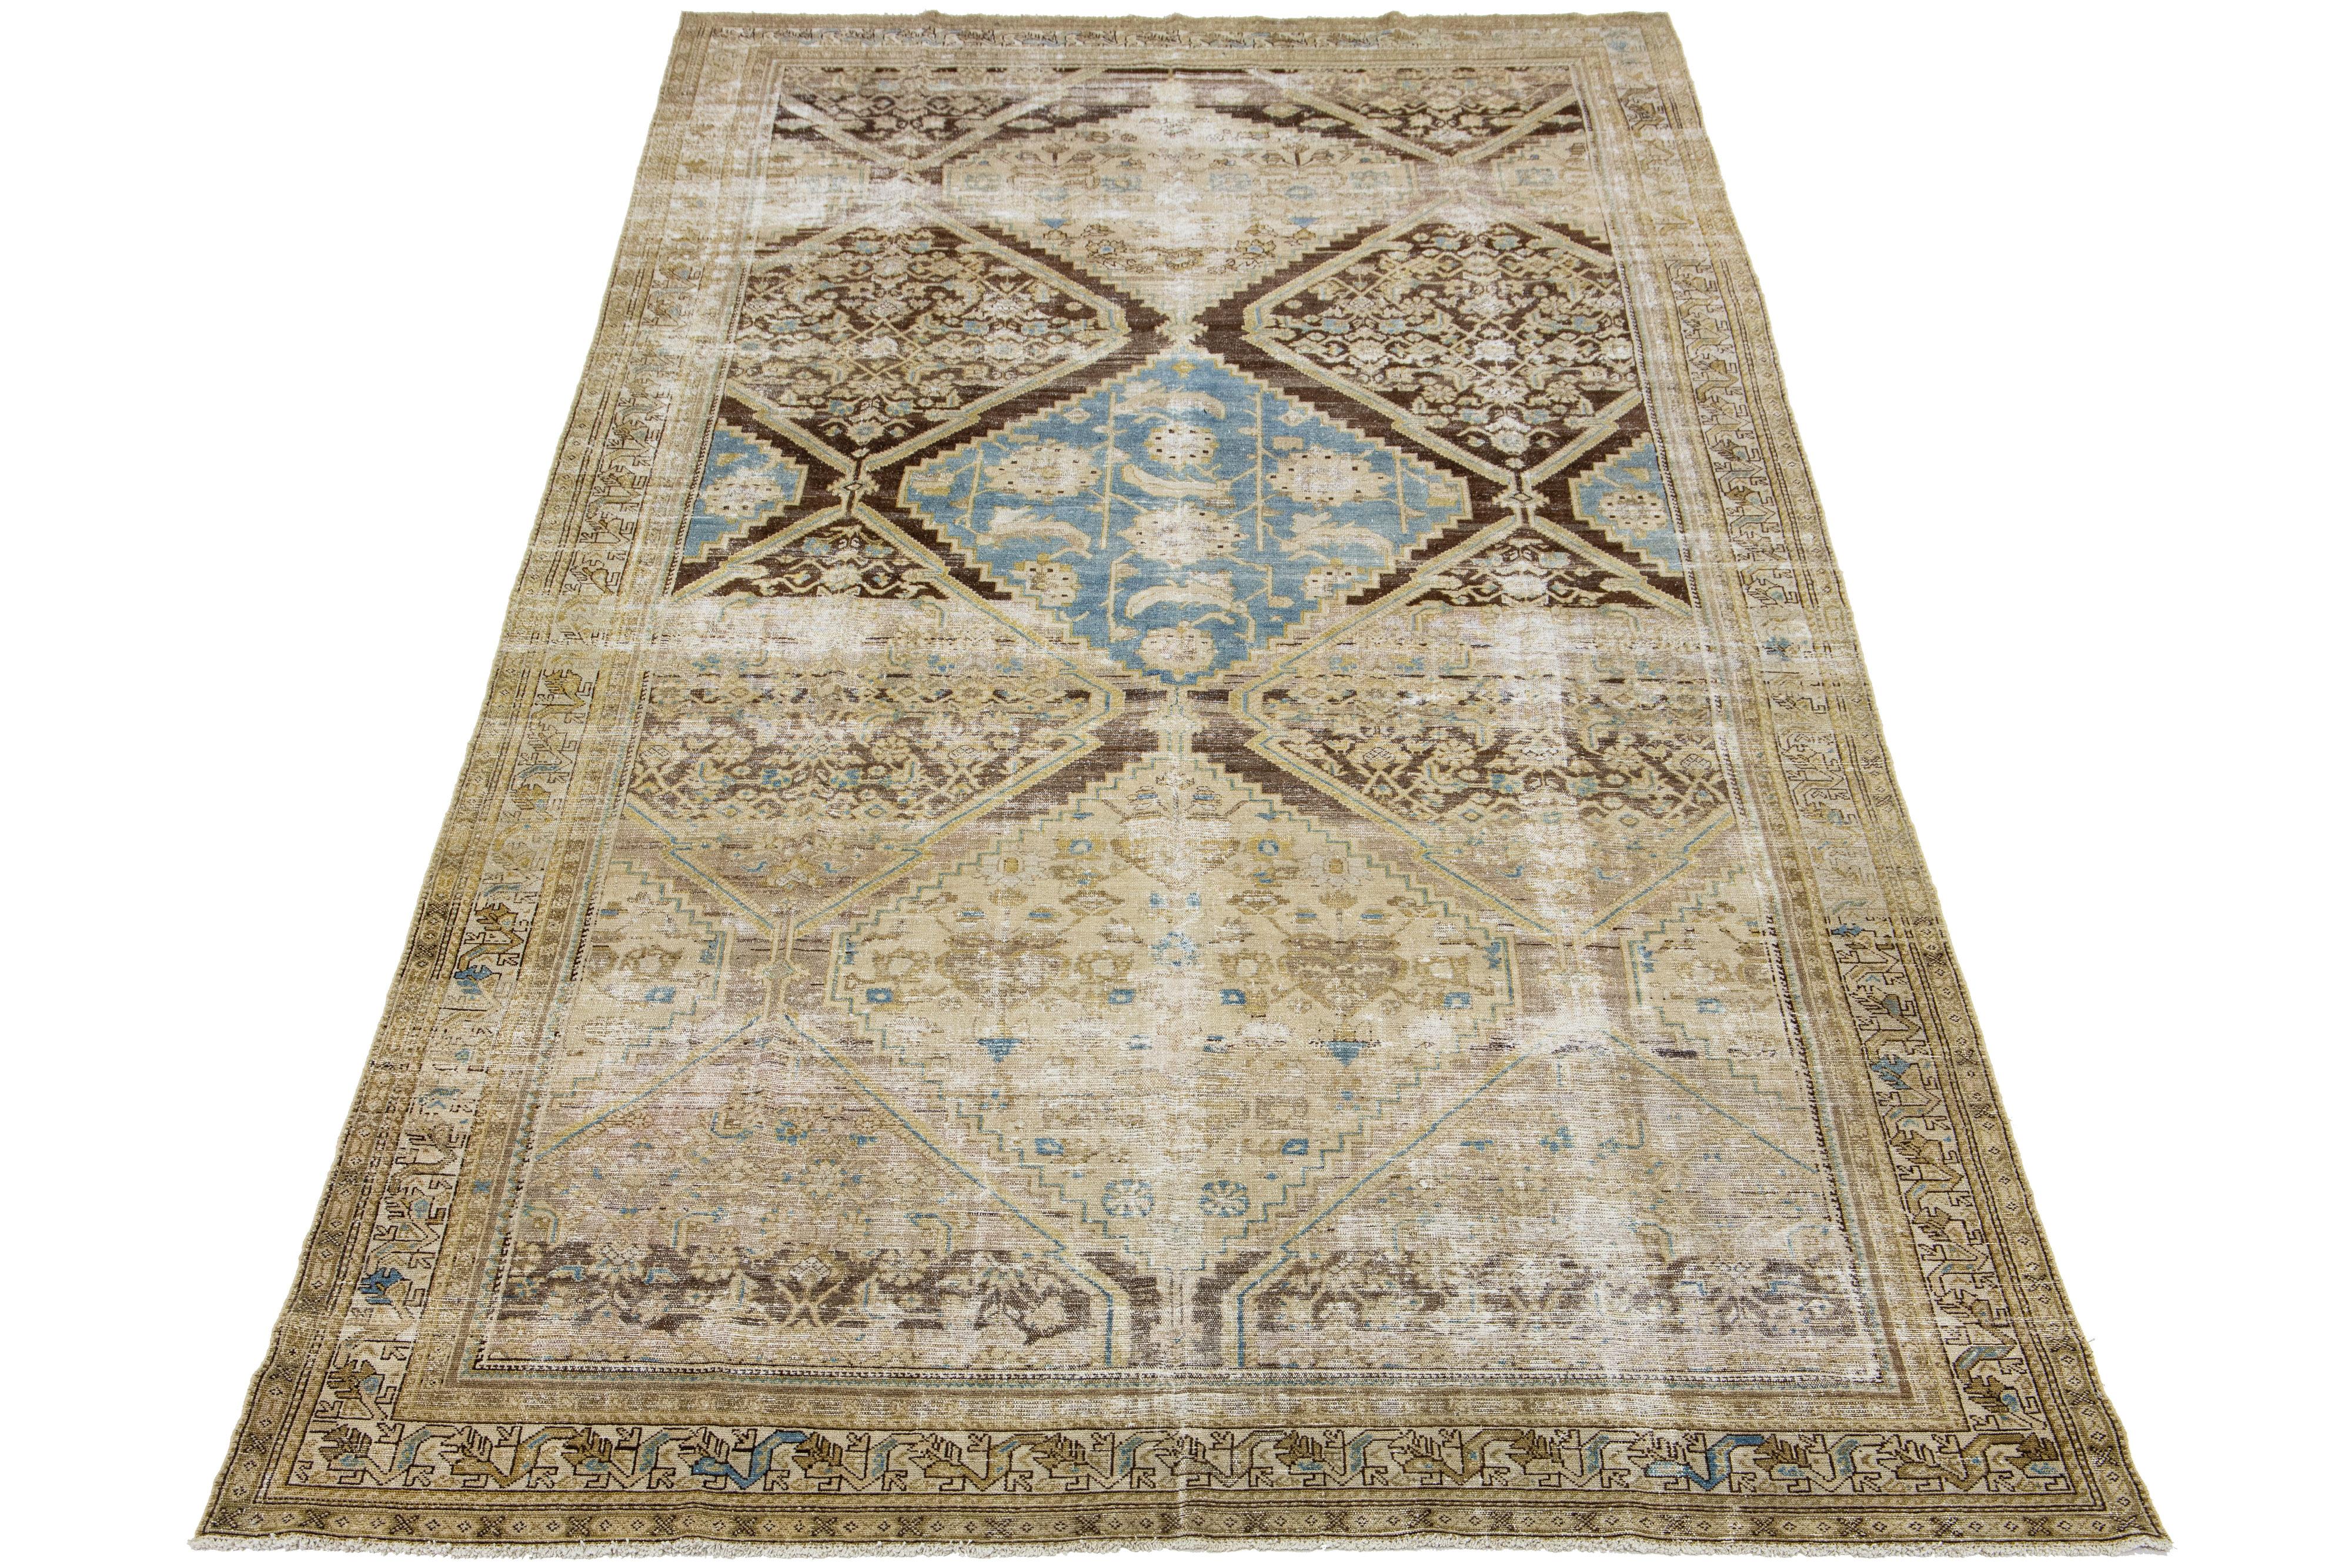 Handgeknüpfter antiker Malayer-Teppich aus Wolle mit einem Allover-Muster mit blauen und beigen Akzenten auf einem braunen Farbfeld.

Dieser Teppich misst 7'9